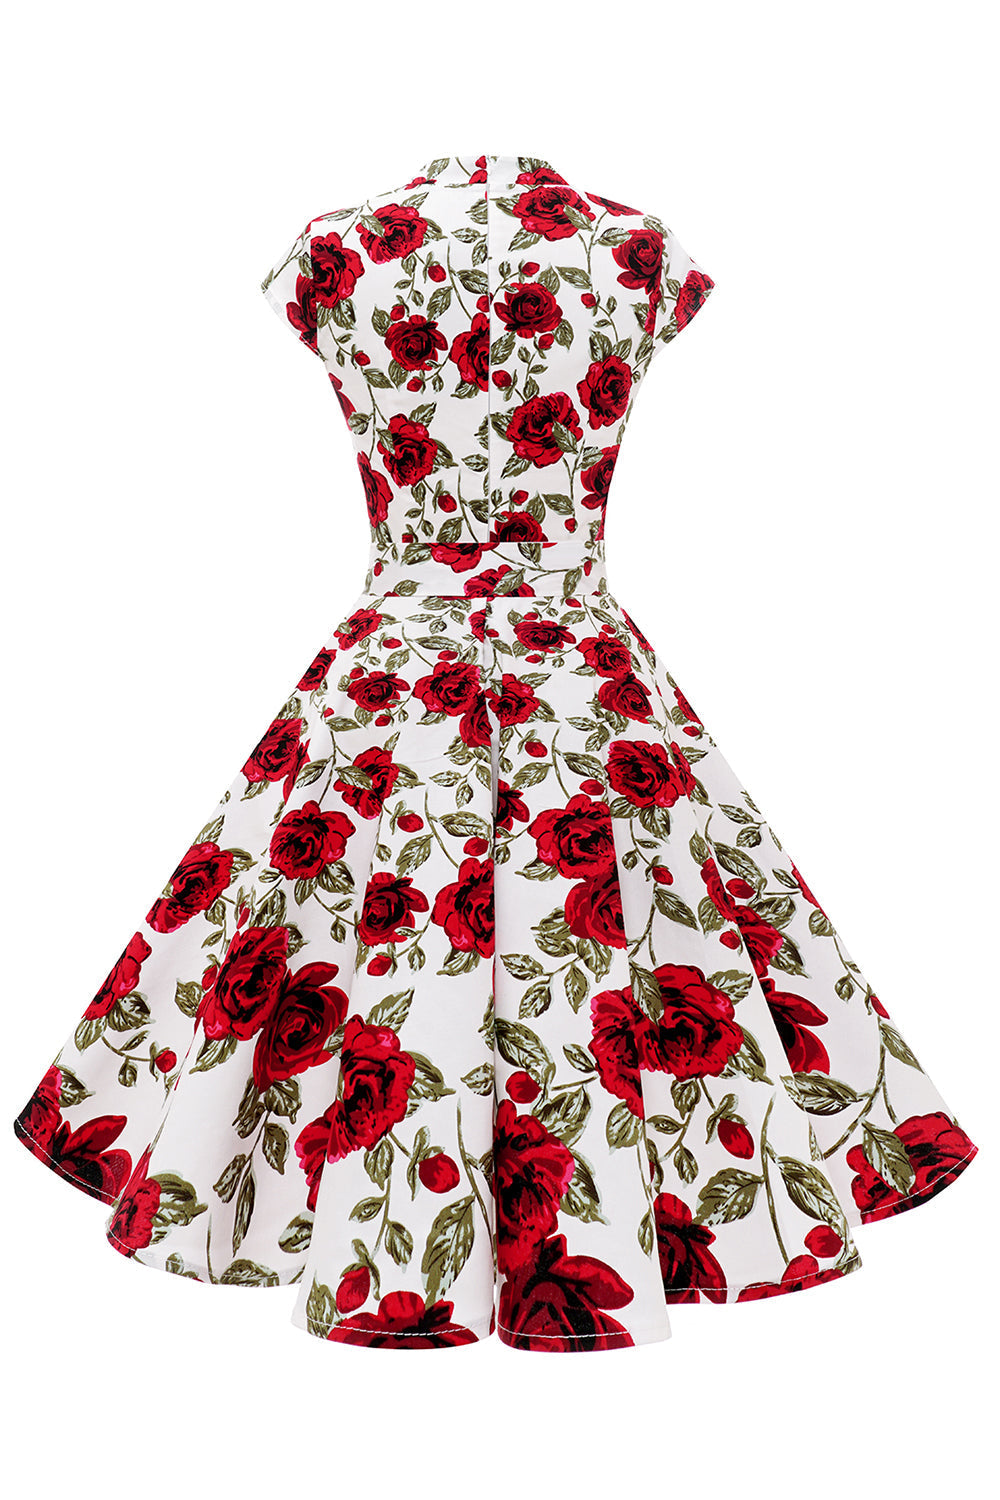 Red Rose Floral Vintage Swing Dress